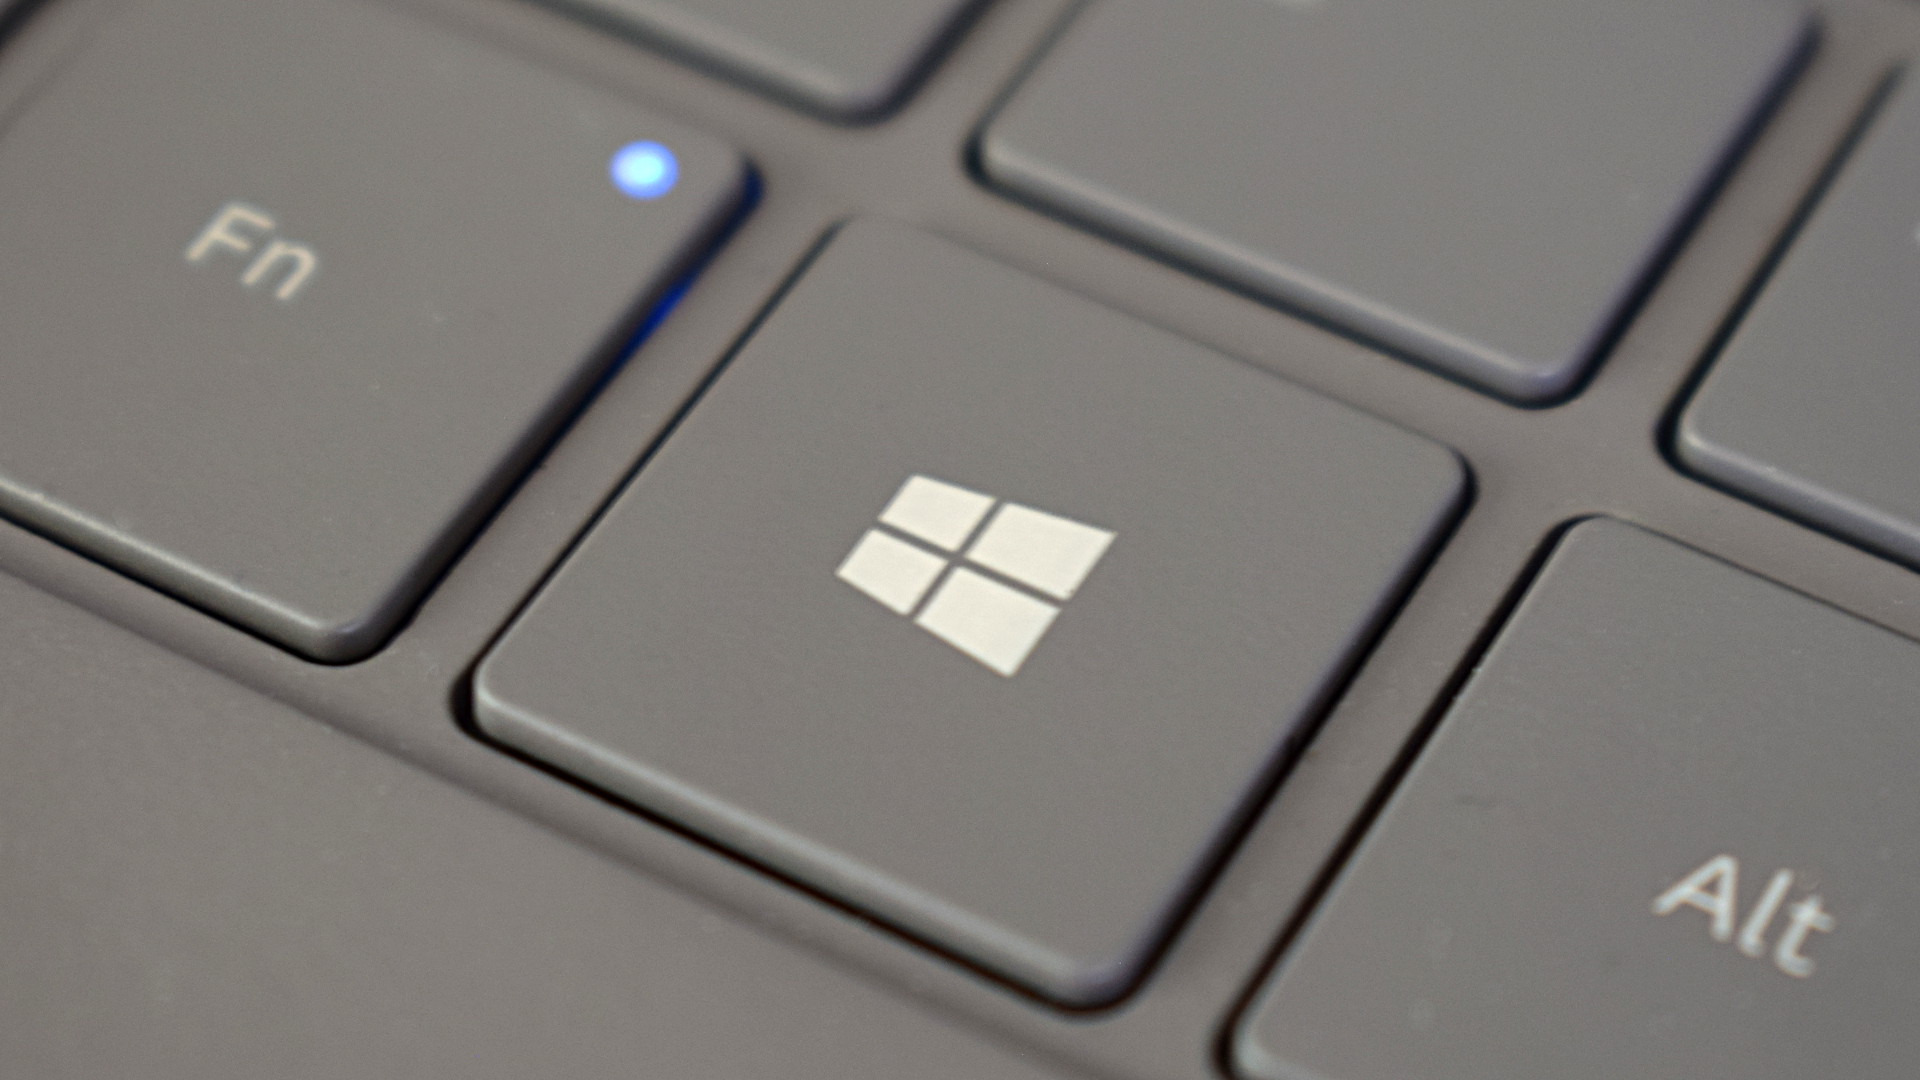 Windows logo key on a PC keyboard.